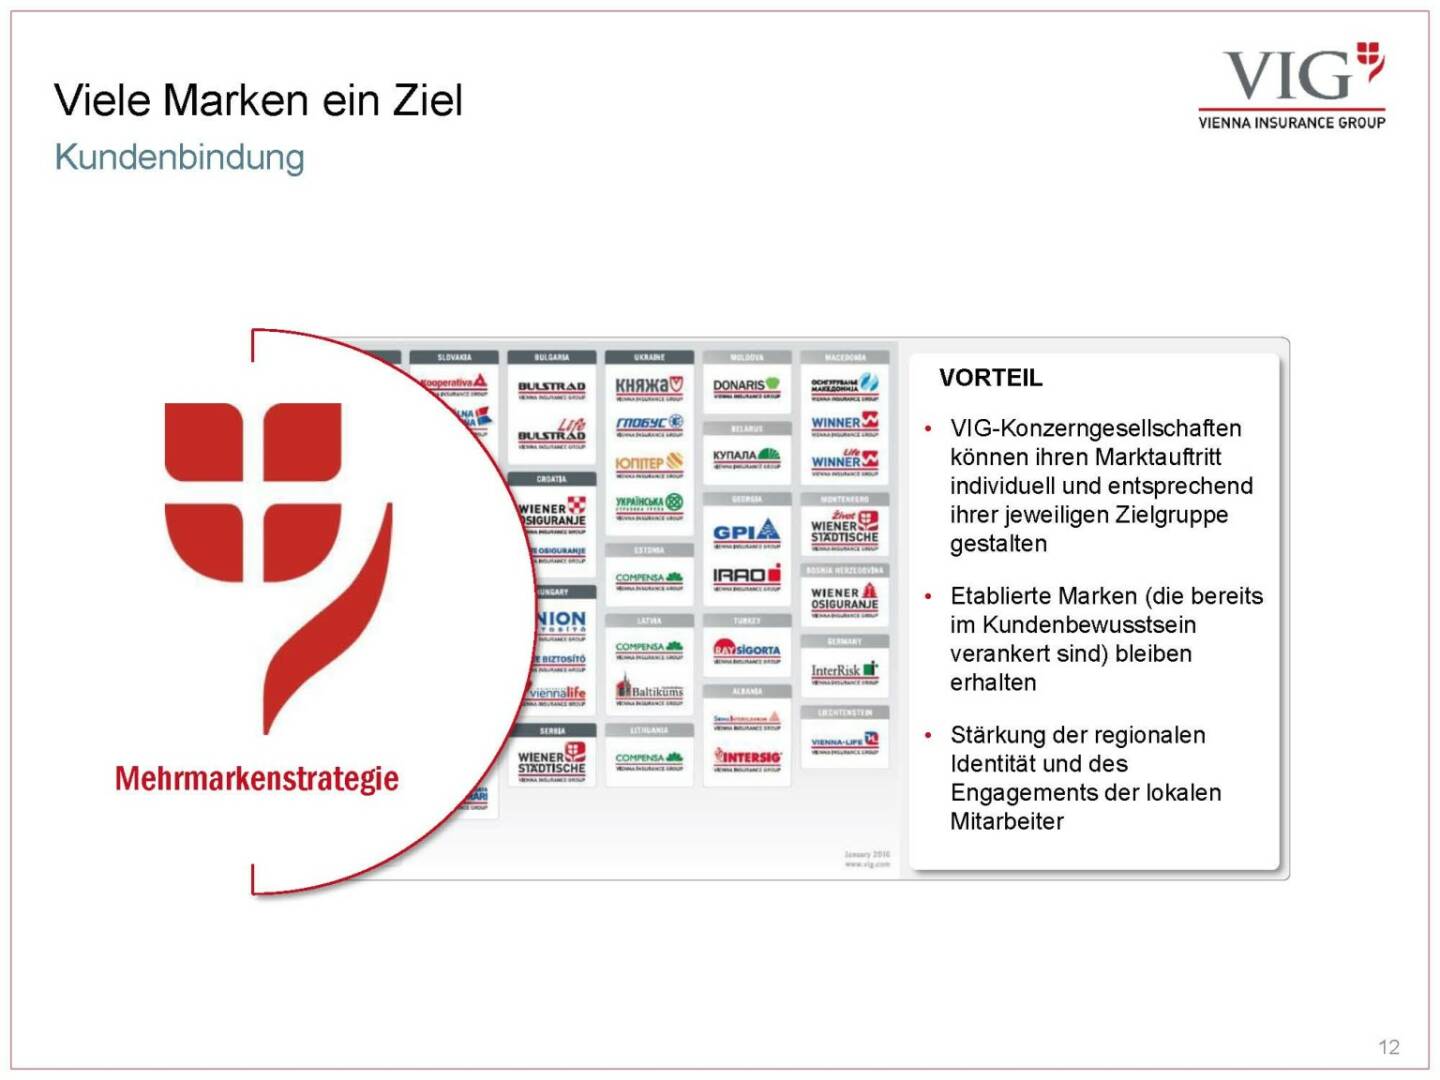 Vienna Insurance Group - Viele Marken ein Ziel